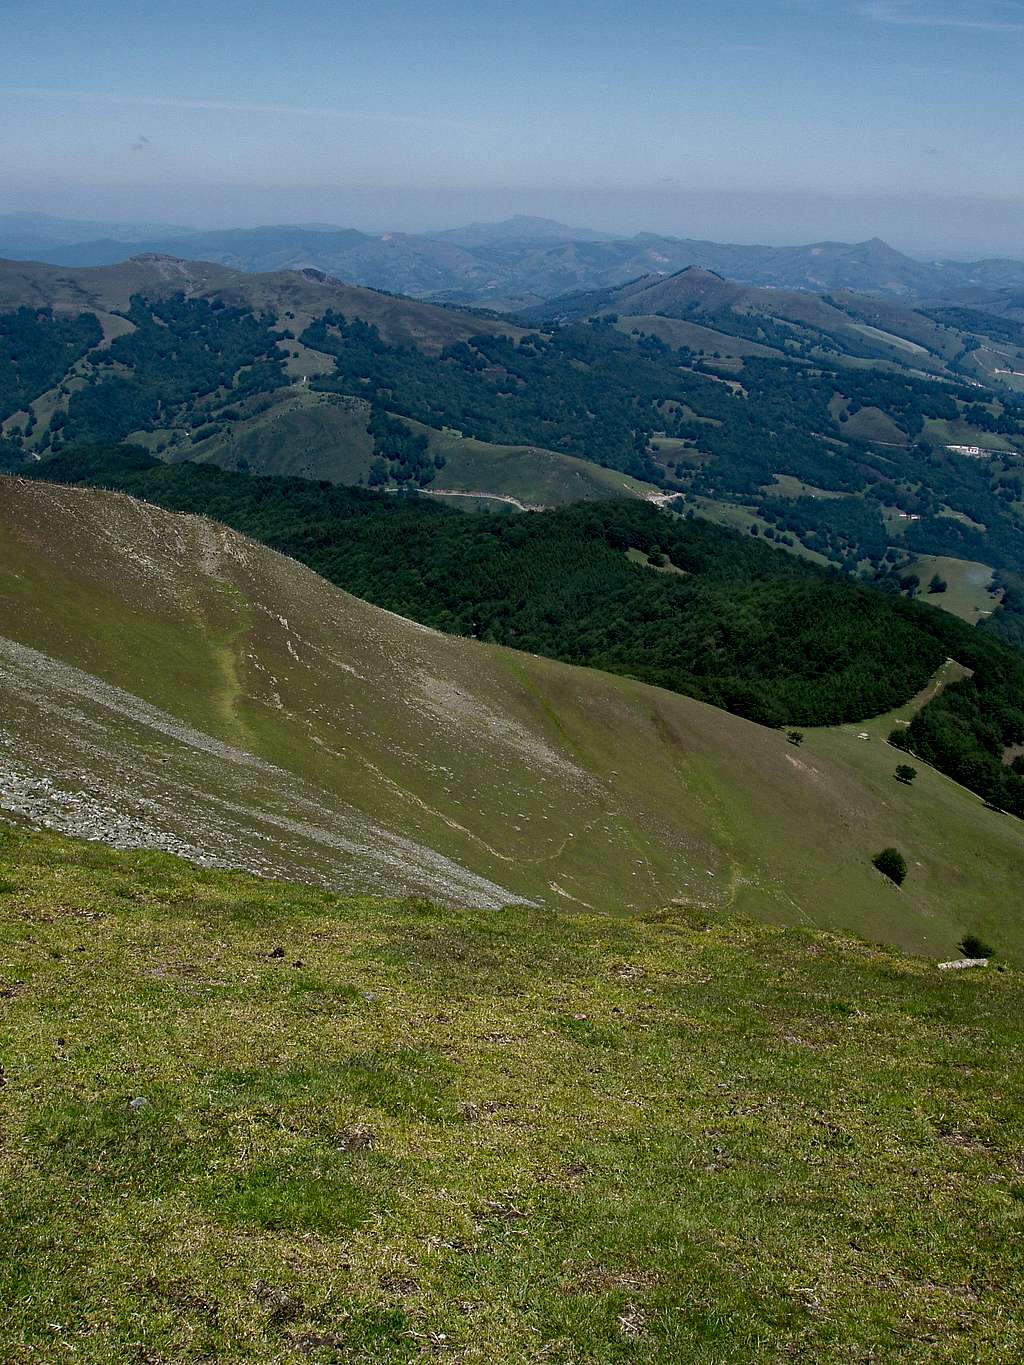 The climb from Urkiaga